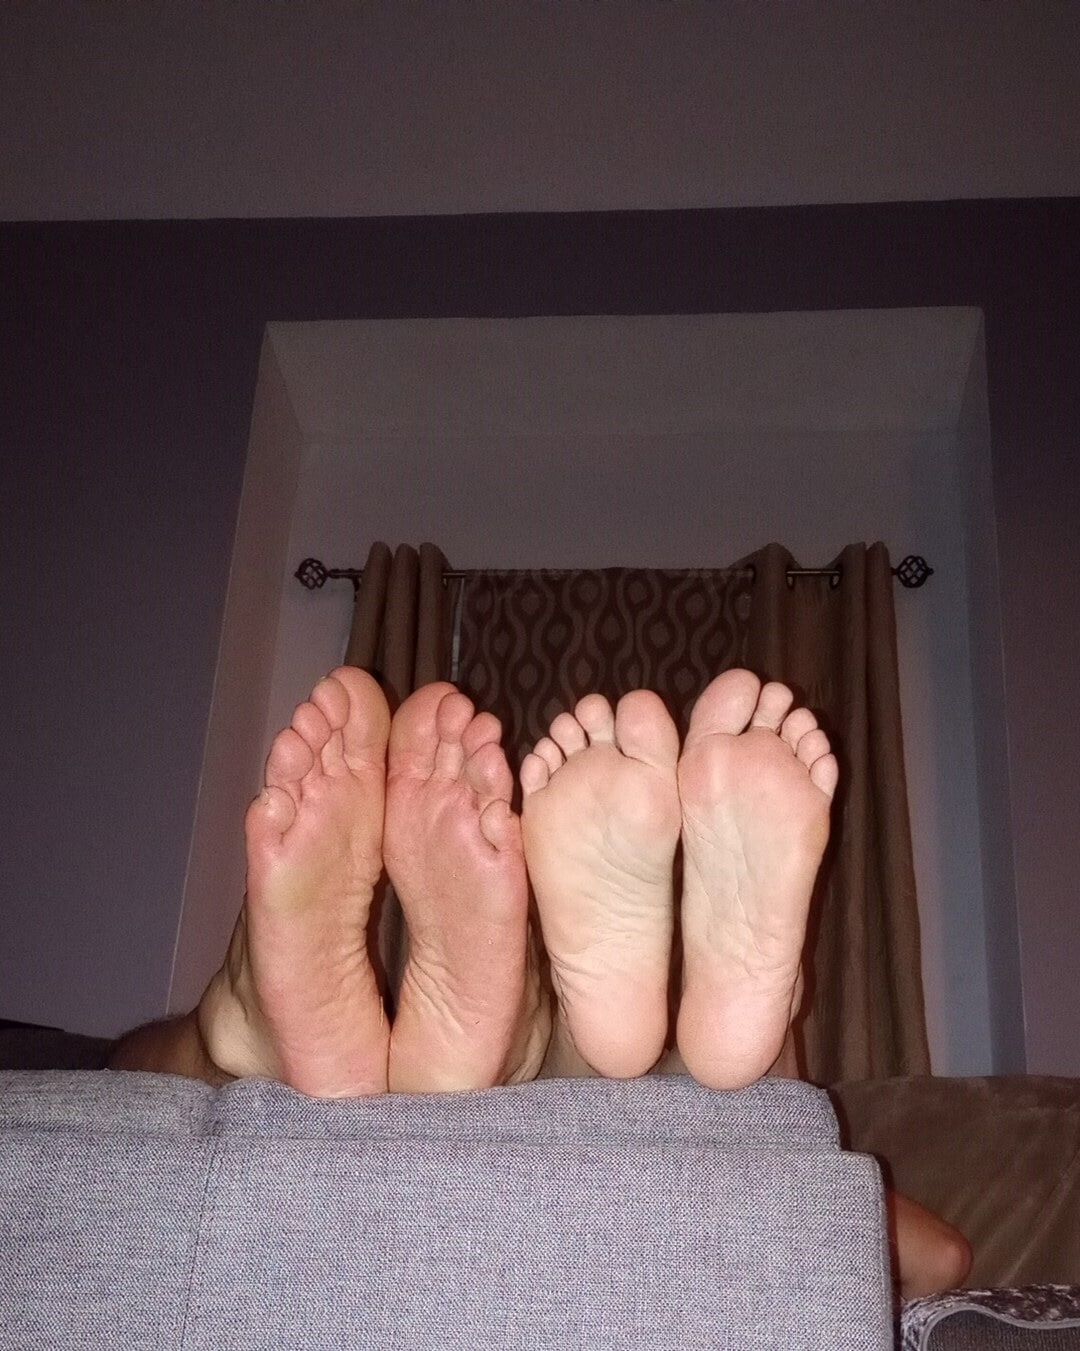 Do you like our feet together #9